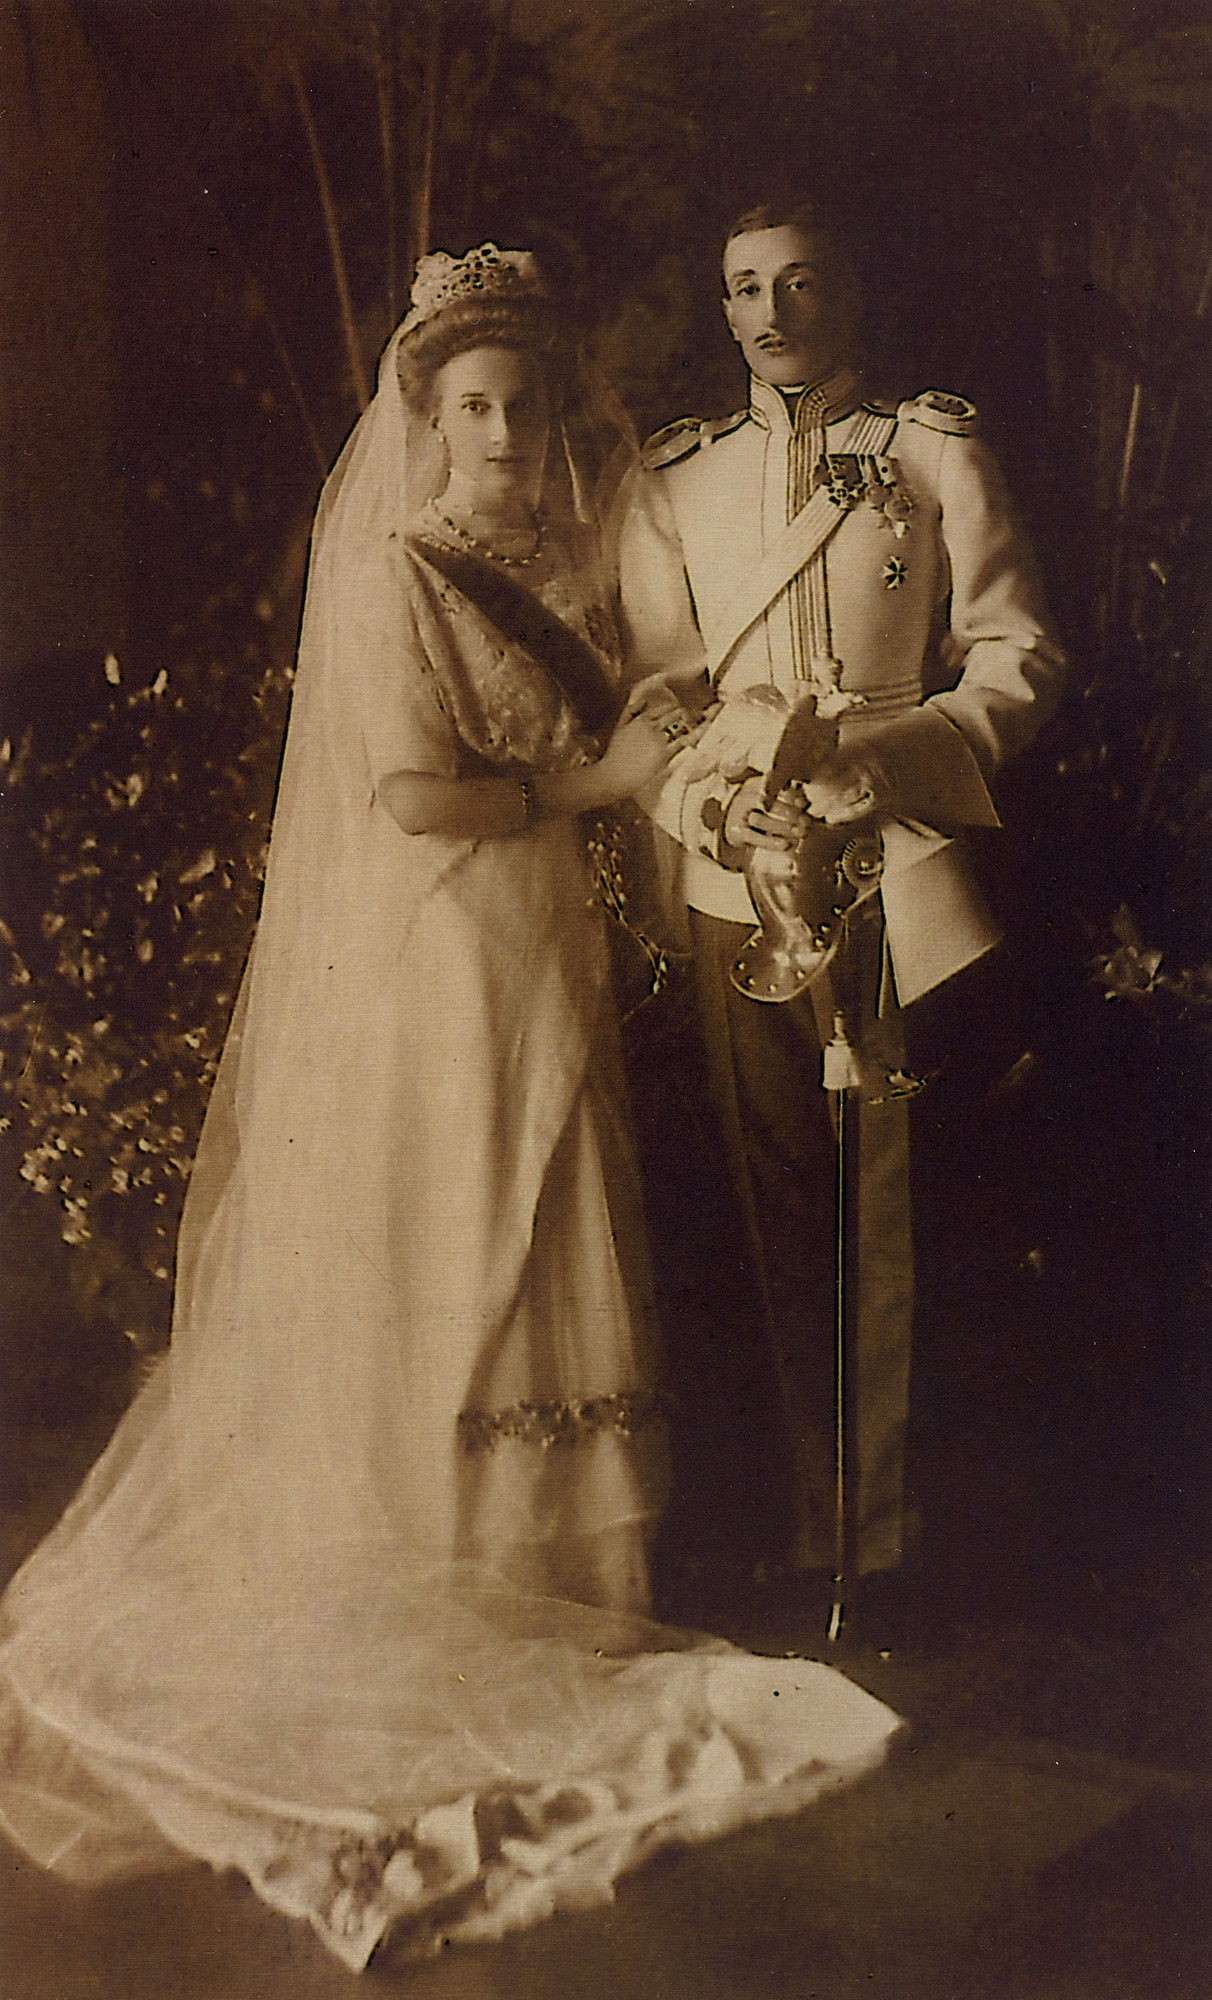 公妃タチアナ・コンスタンチノヴナとコンスタンチン・バグラティオニ＝ムフランスキーんの結婚写真